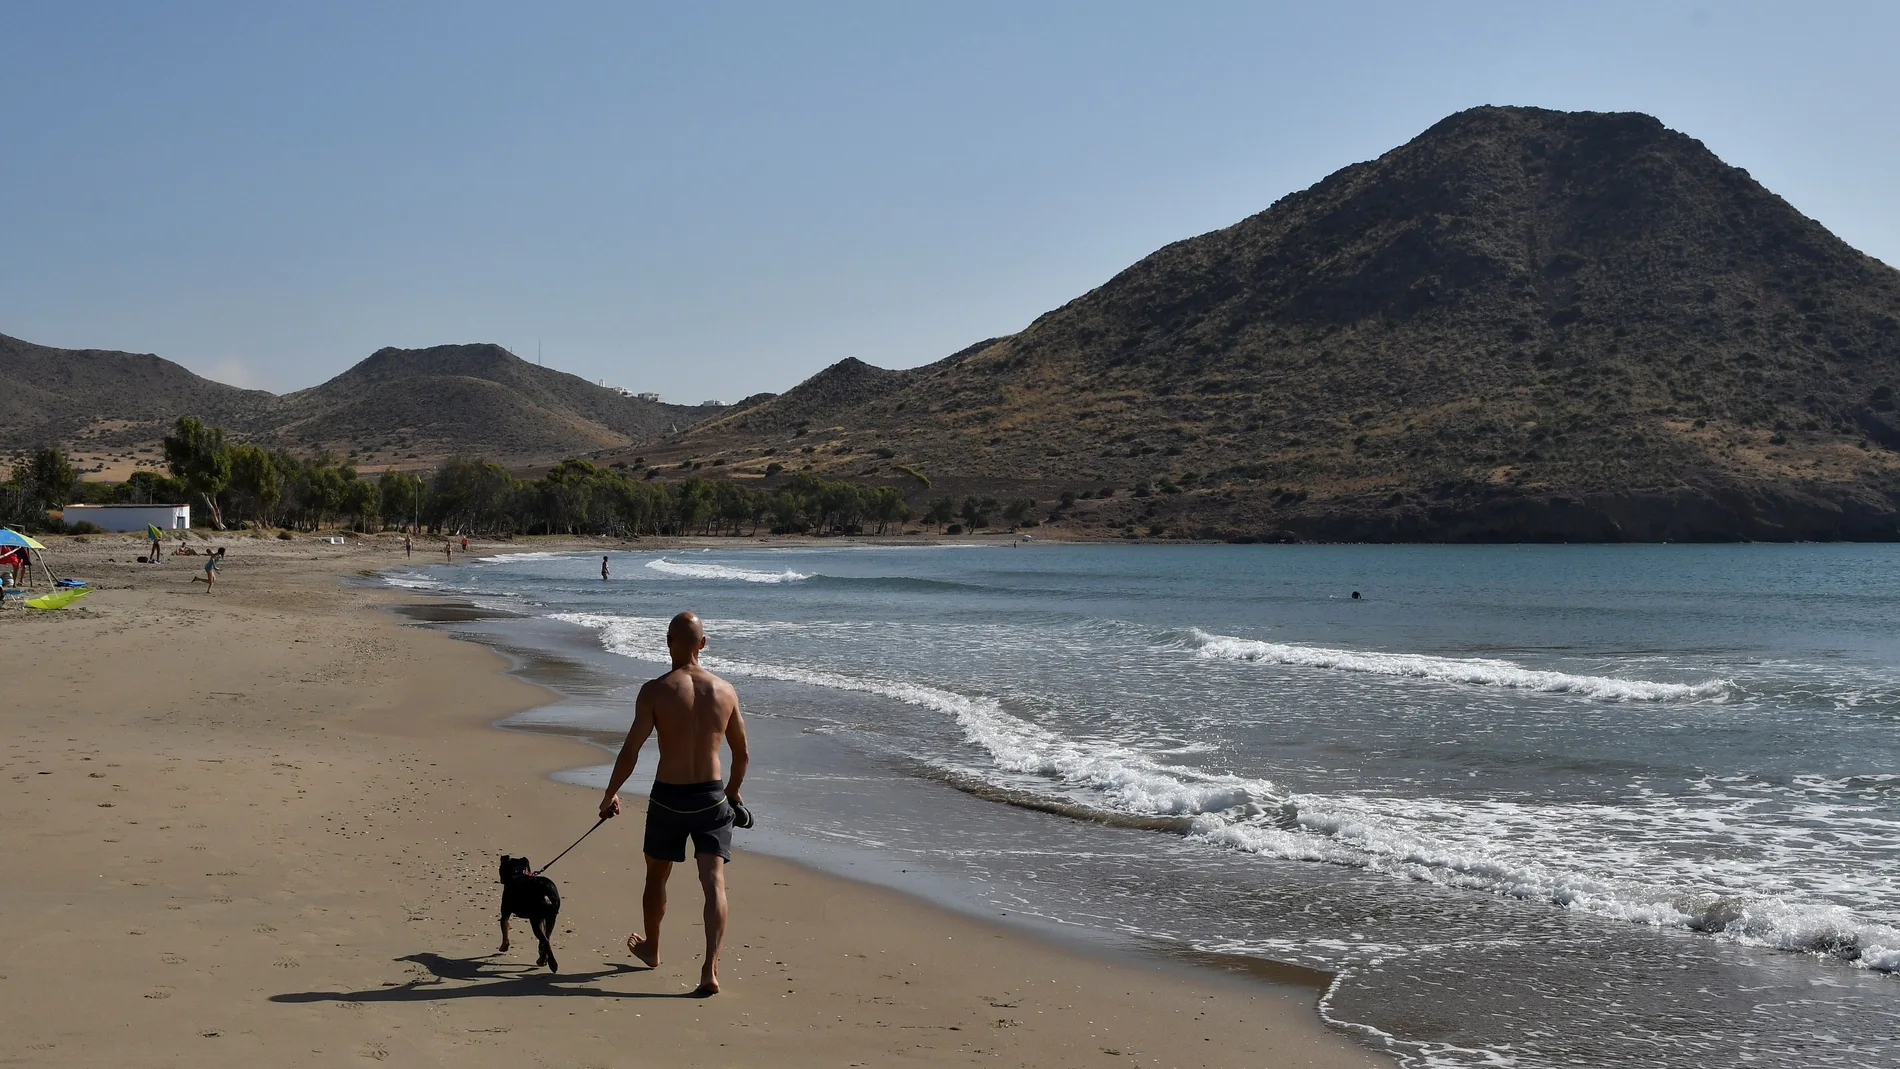 Turismo afirma que aún no ha llegado petición para hotel en cortijo Cabo Gata